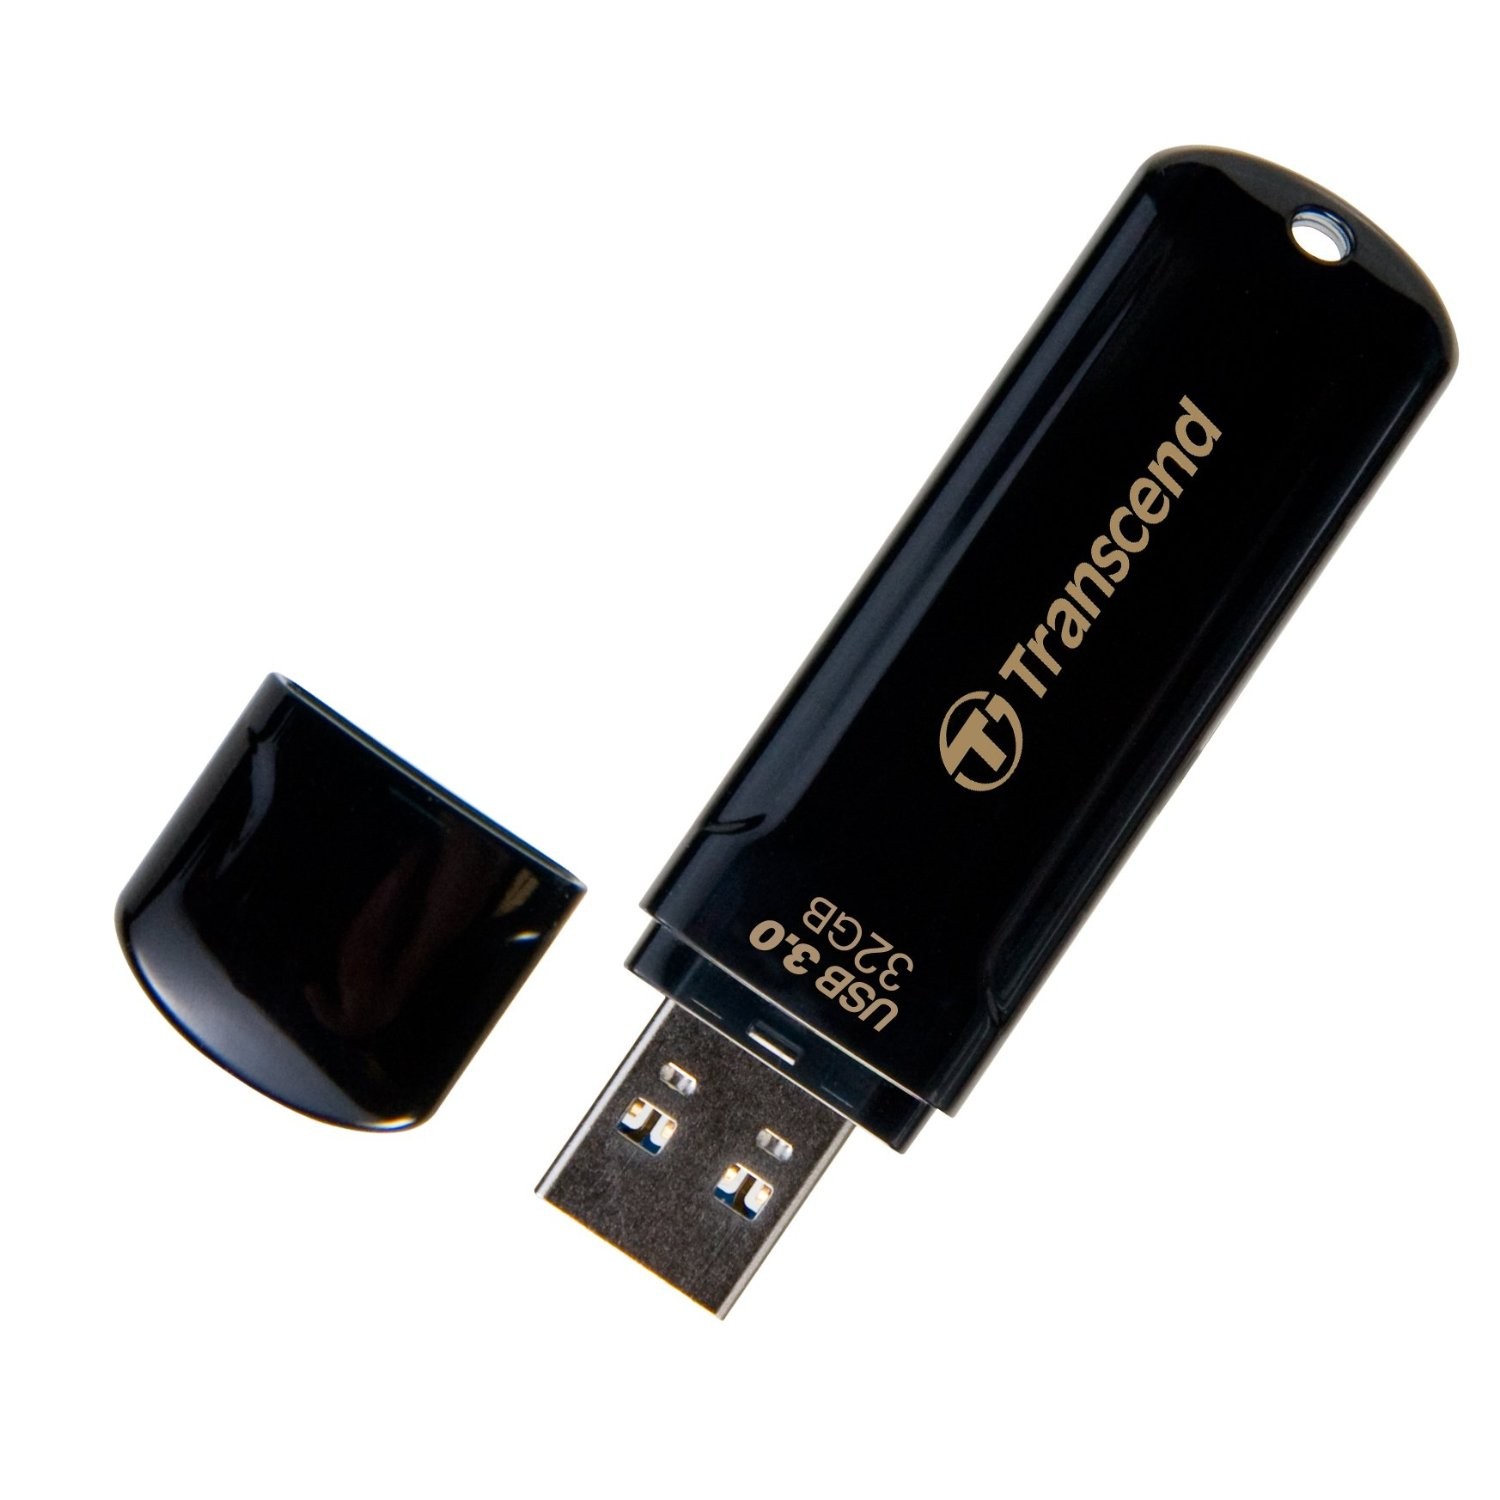 Flash DRIVE USB 64Gb 700 (Transcend)